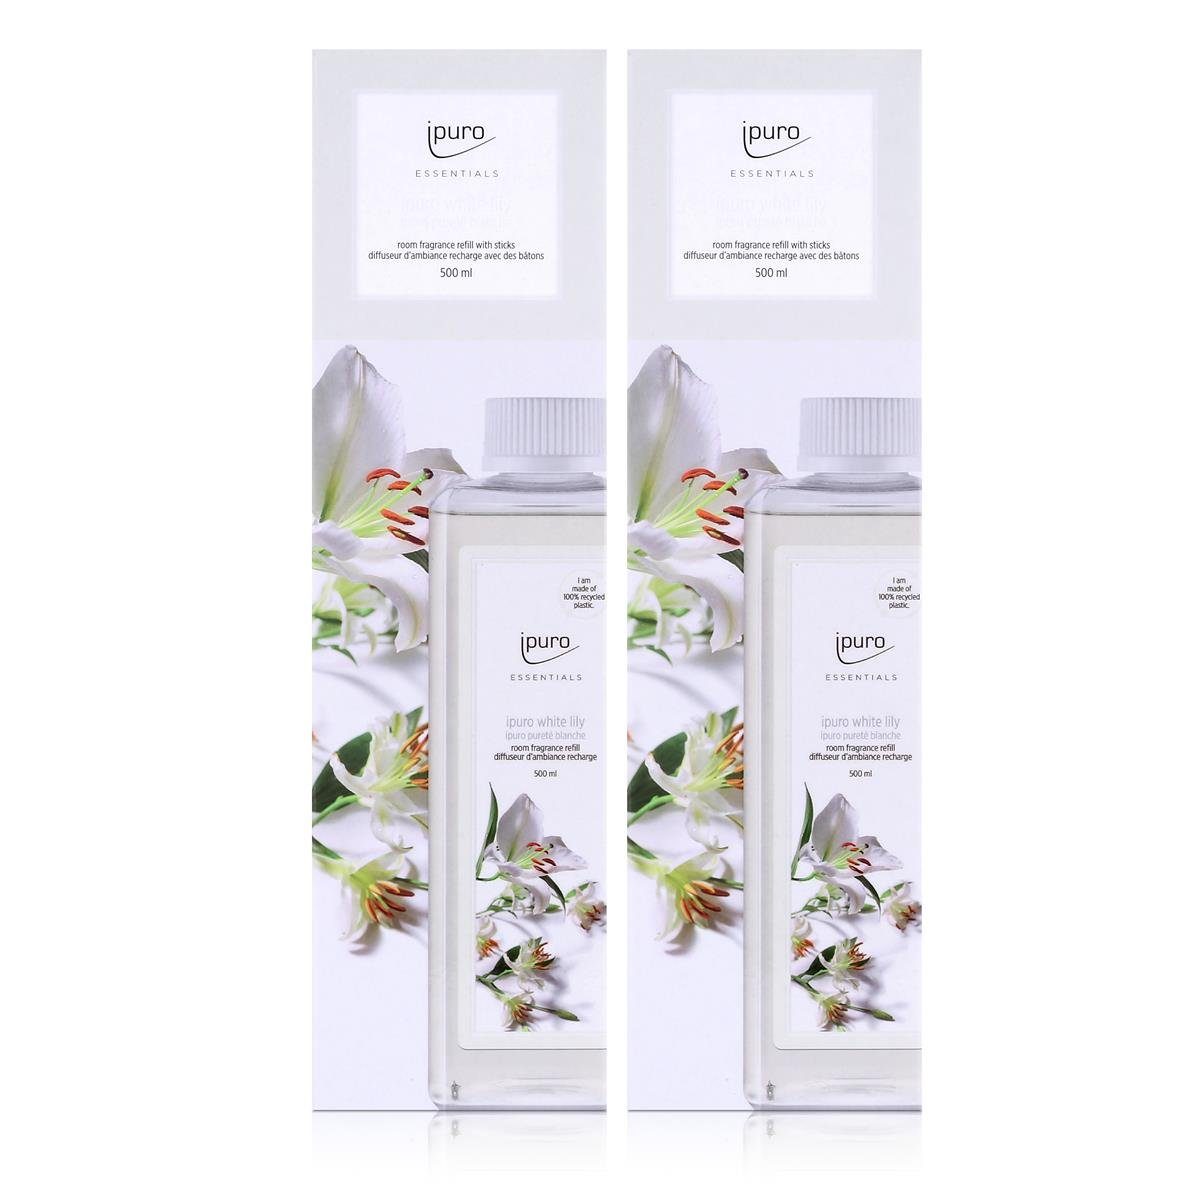 IPURO Raumduft Ipuro Essentials white lily Refill 500ml Nachfüllflasche Raumduft (2er